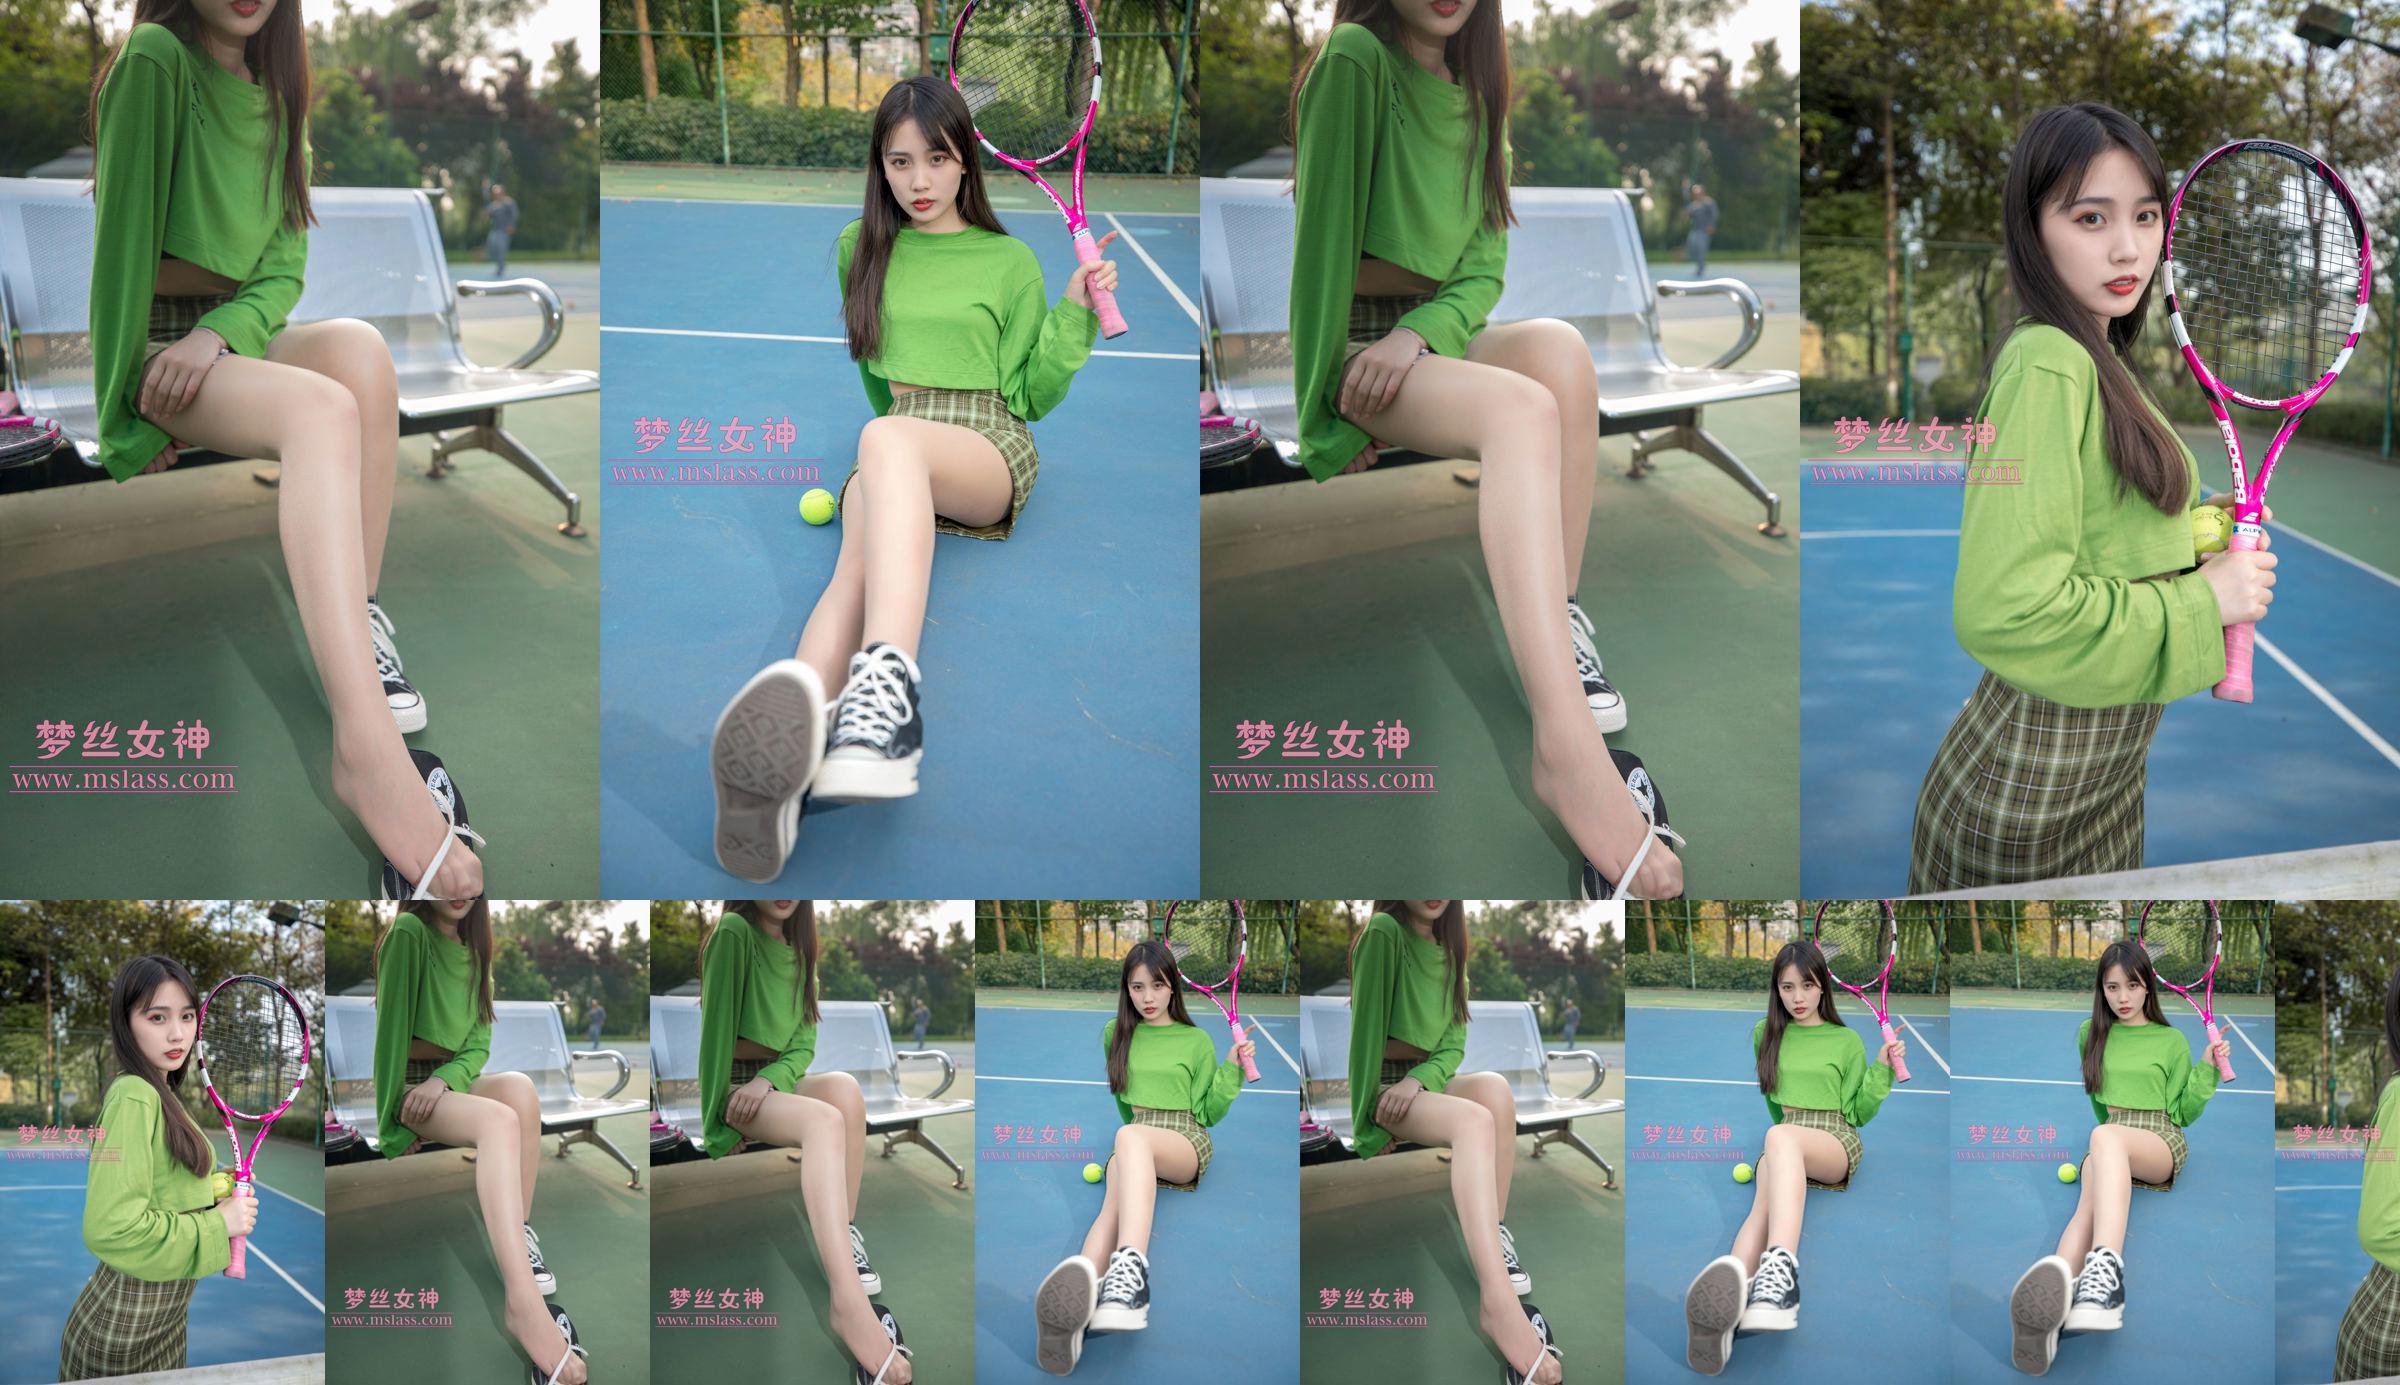 [เทพธิดาแห่งความฝัน MSLASS] Xiang Xuan Tennis Girl No.01fba1 หน้า 1